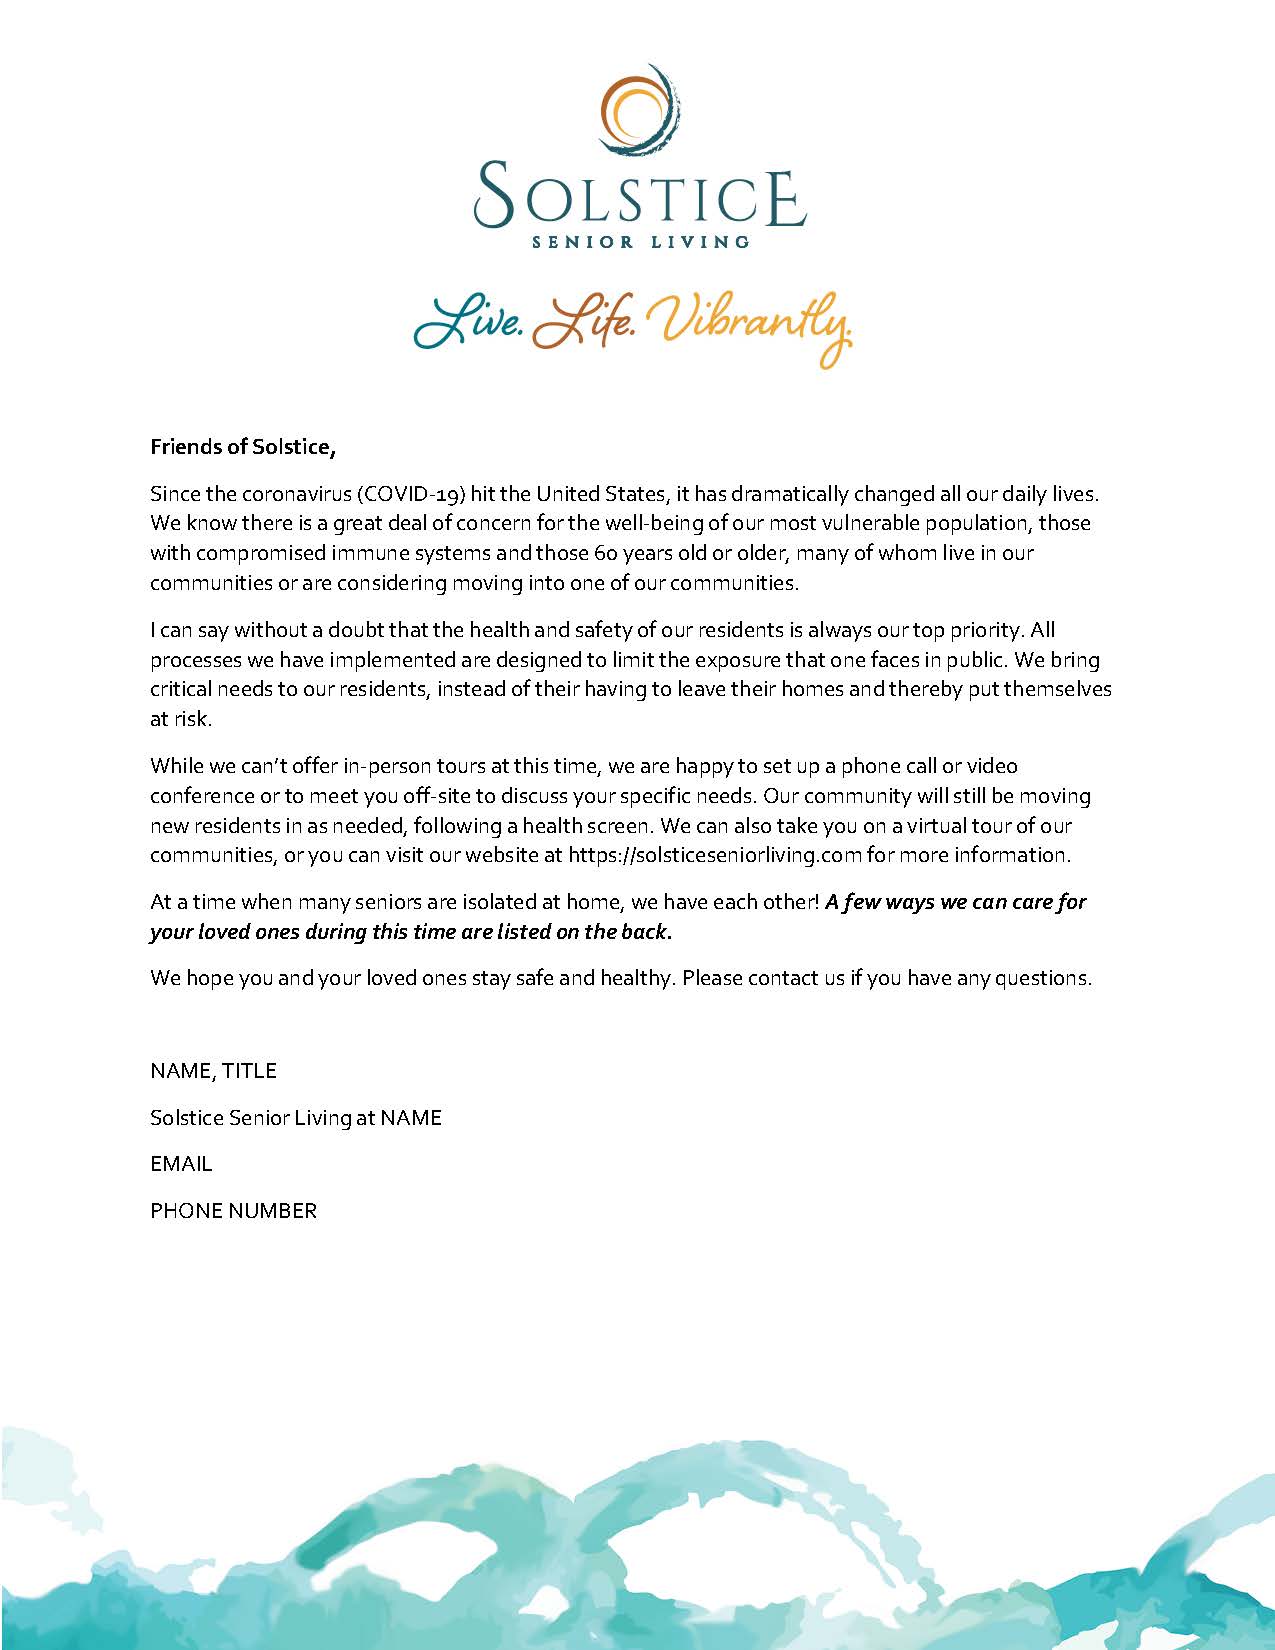 Friends of Solstice flyer